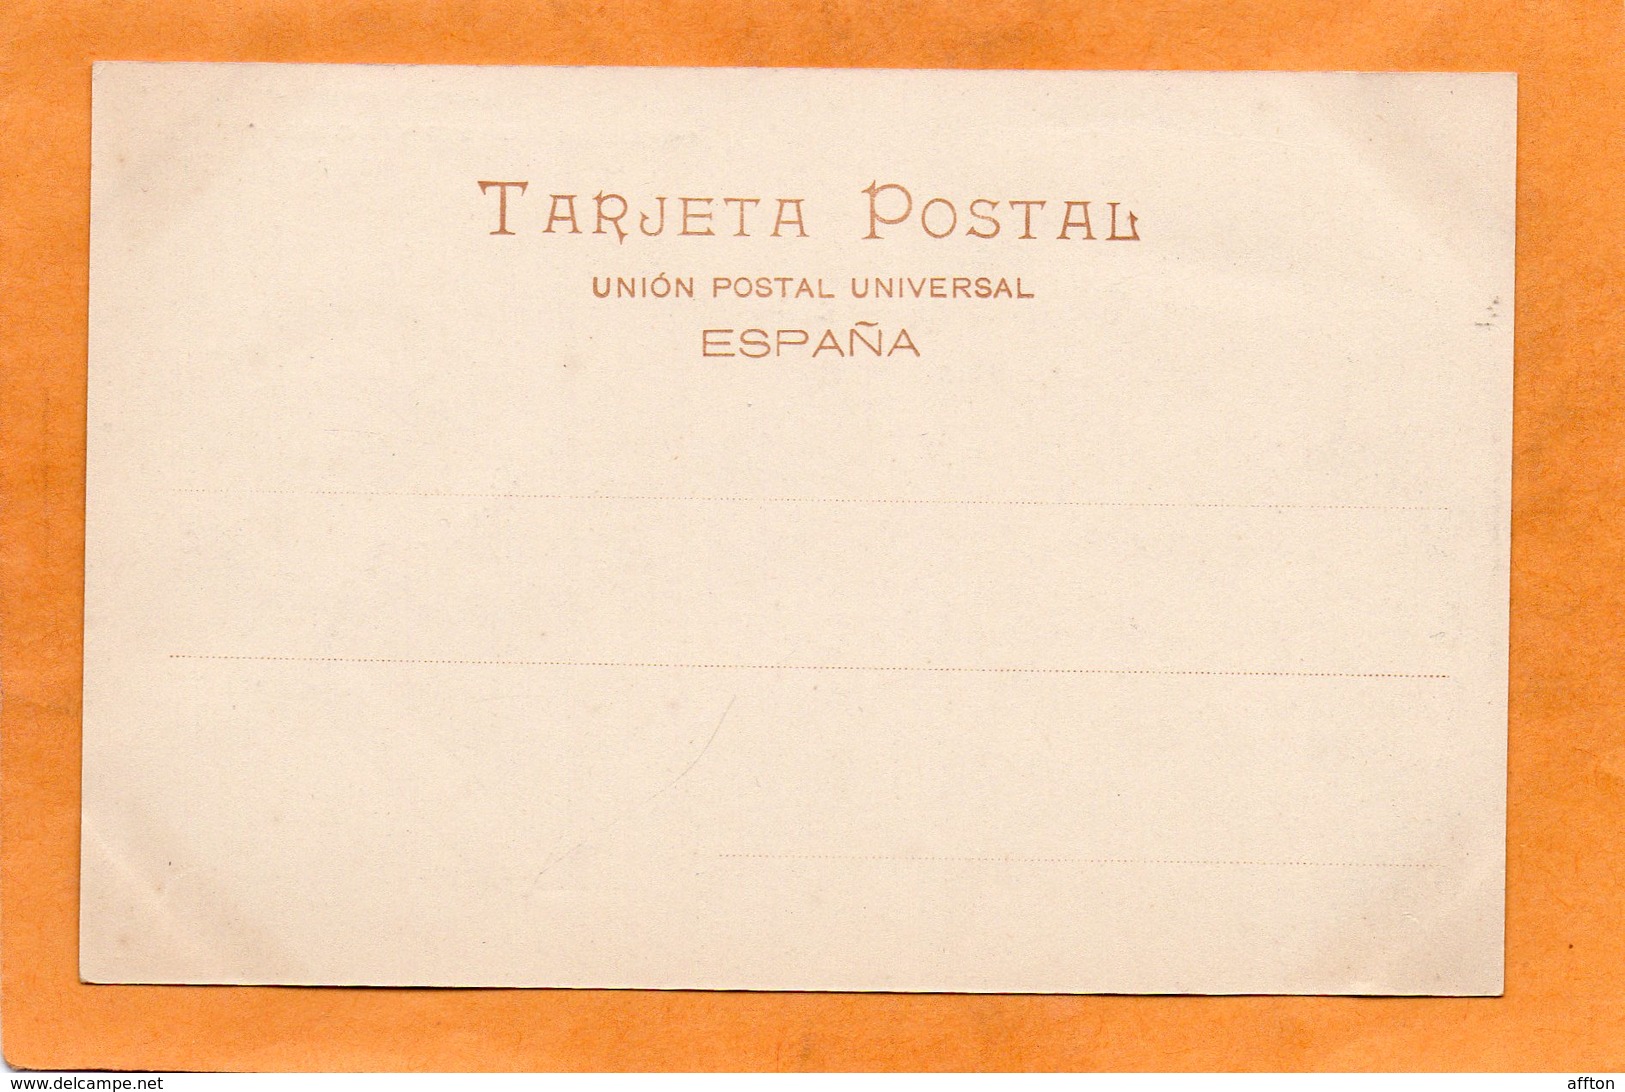 Guadalajara Spain 1900 Postcard - Guadalajara